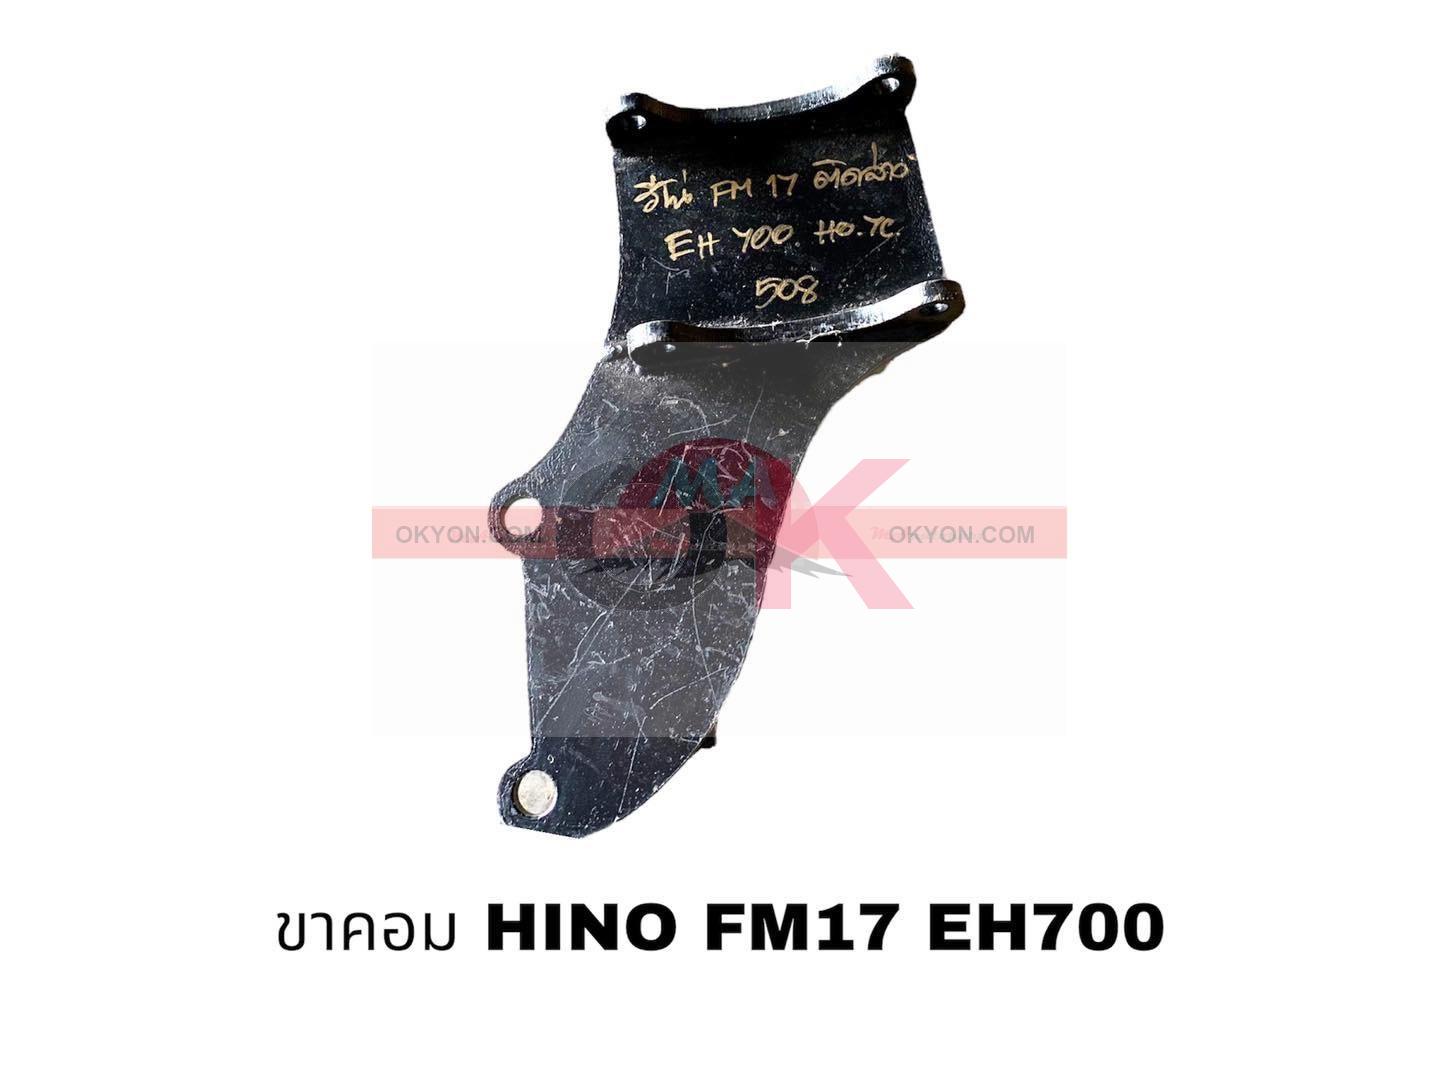 ขาคอม HINO 925 ล่าง 185แรง EH700